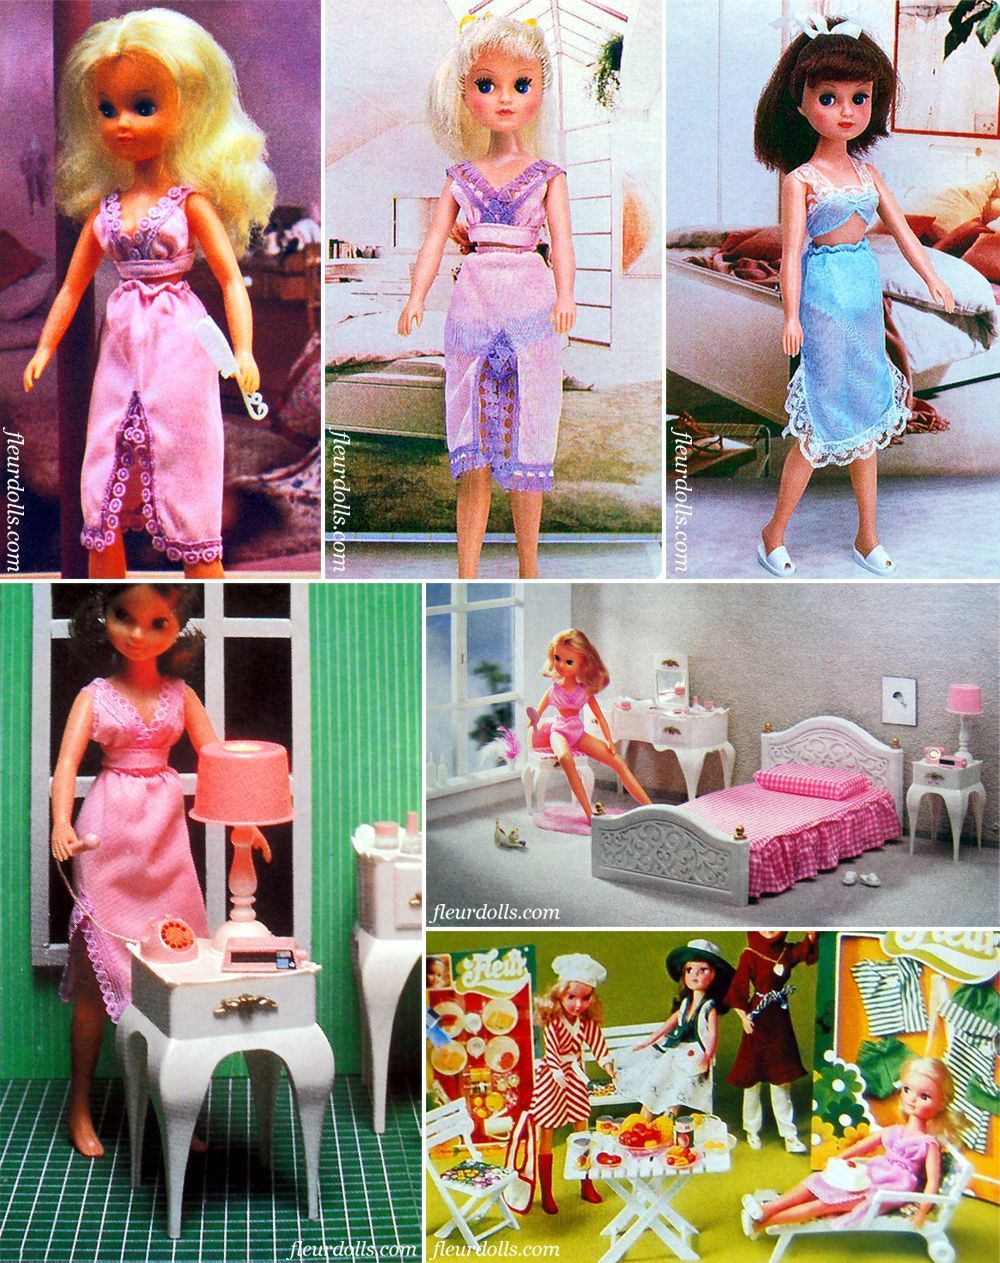 Fleur doll lingerie promo photos outfit 1236 Otto Simon fashion underwear